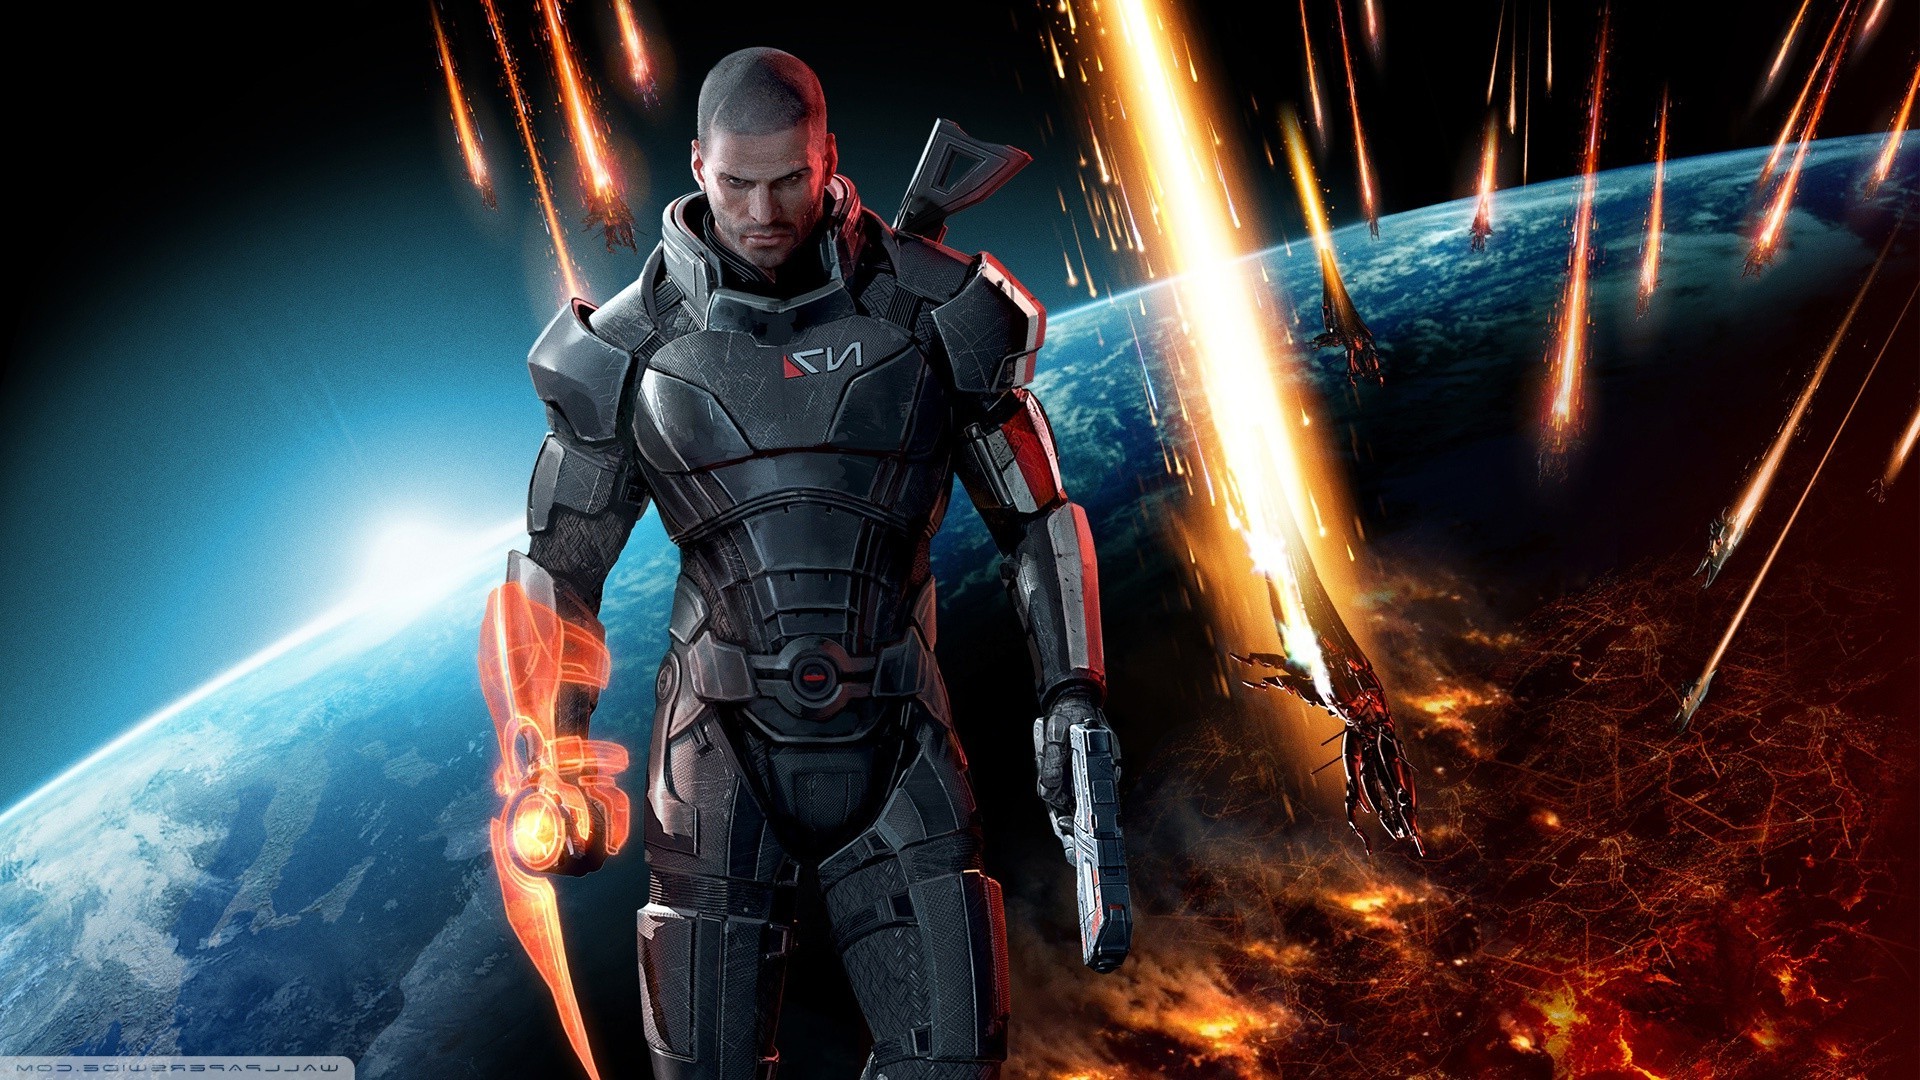 Mass Effect, Video Games, Mass Effect 3 Wallpaper